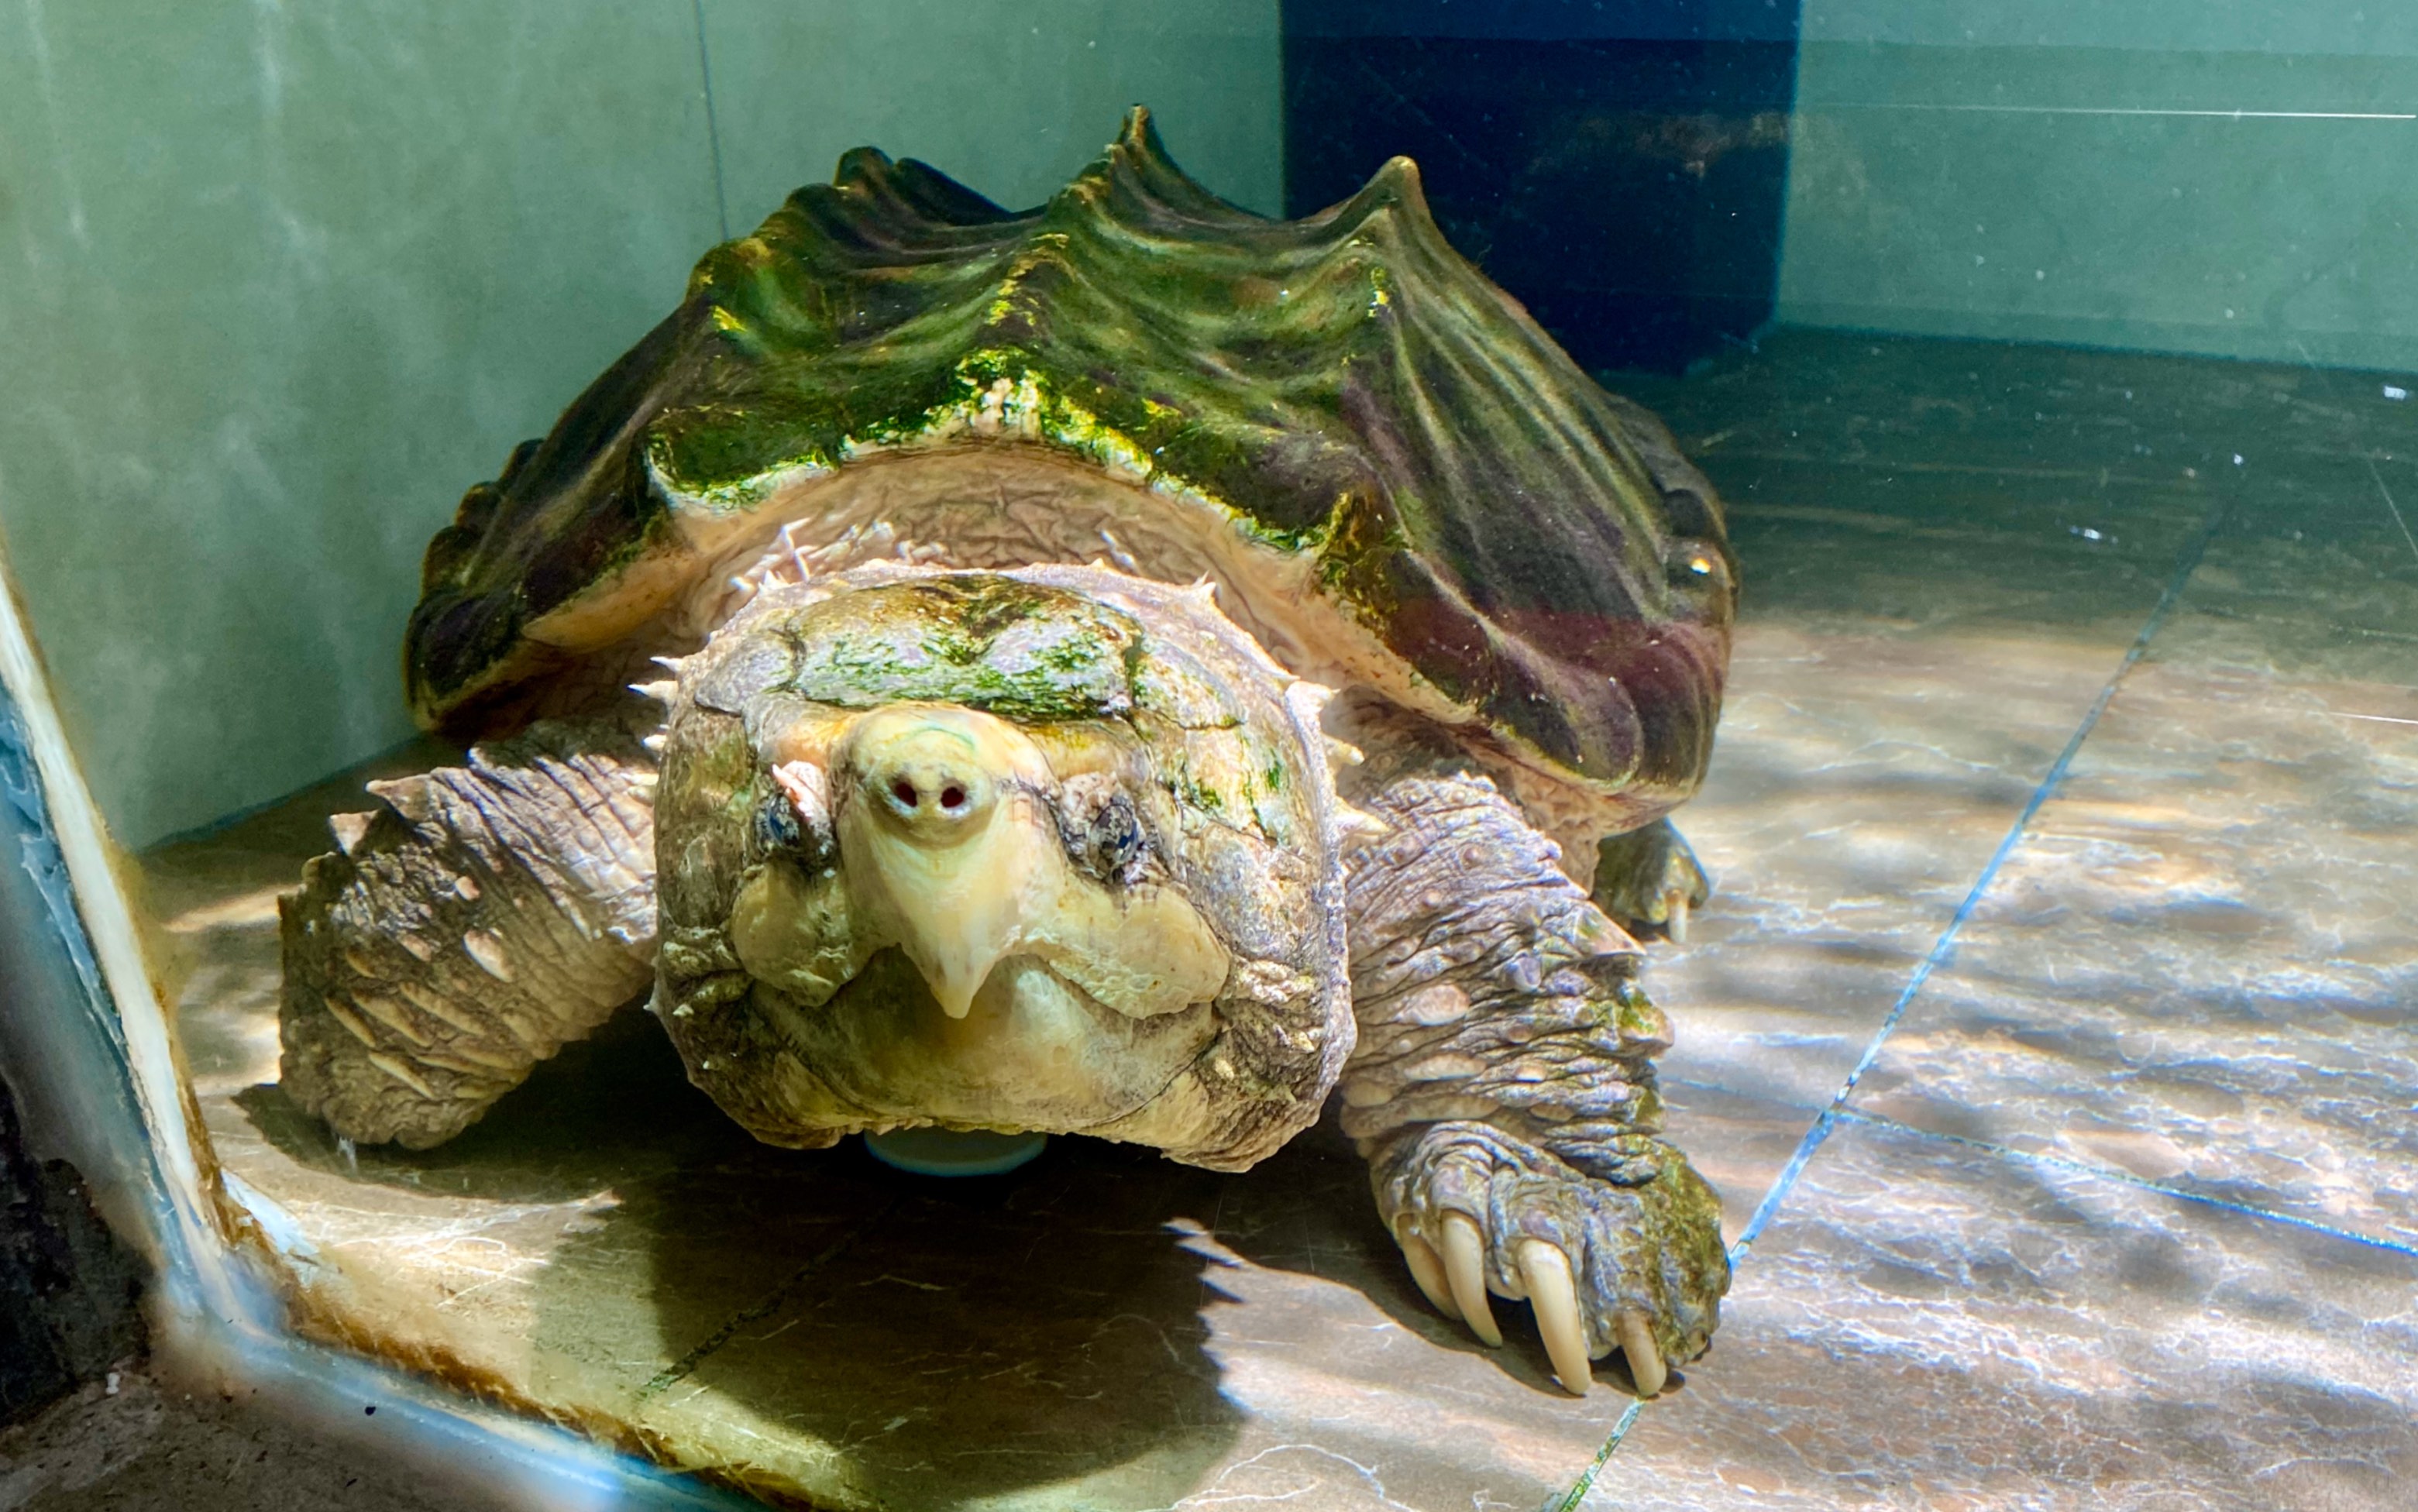 ？我家的乌龟是什么品种的？水龟还是陆龟？怎么养？它吃什么？直接将食物放水里喂食吗？如何判定它的年龄_百度知道